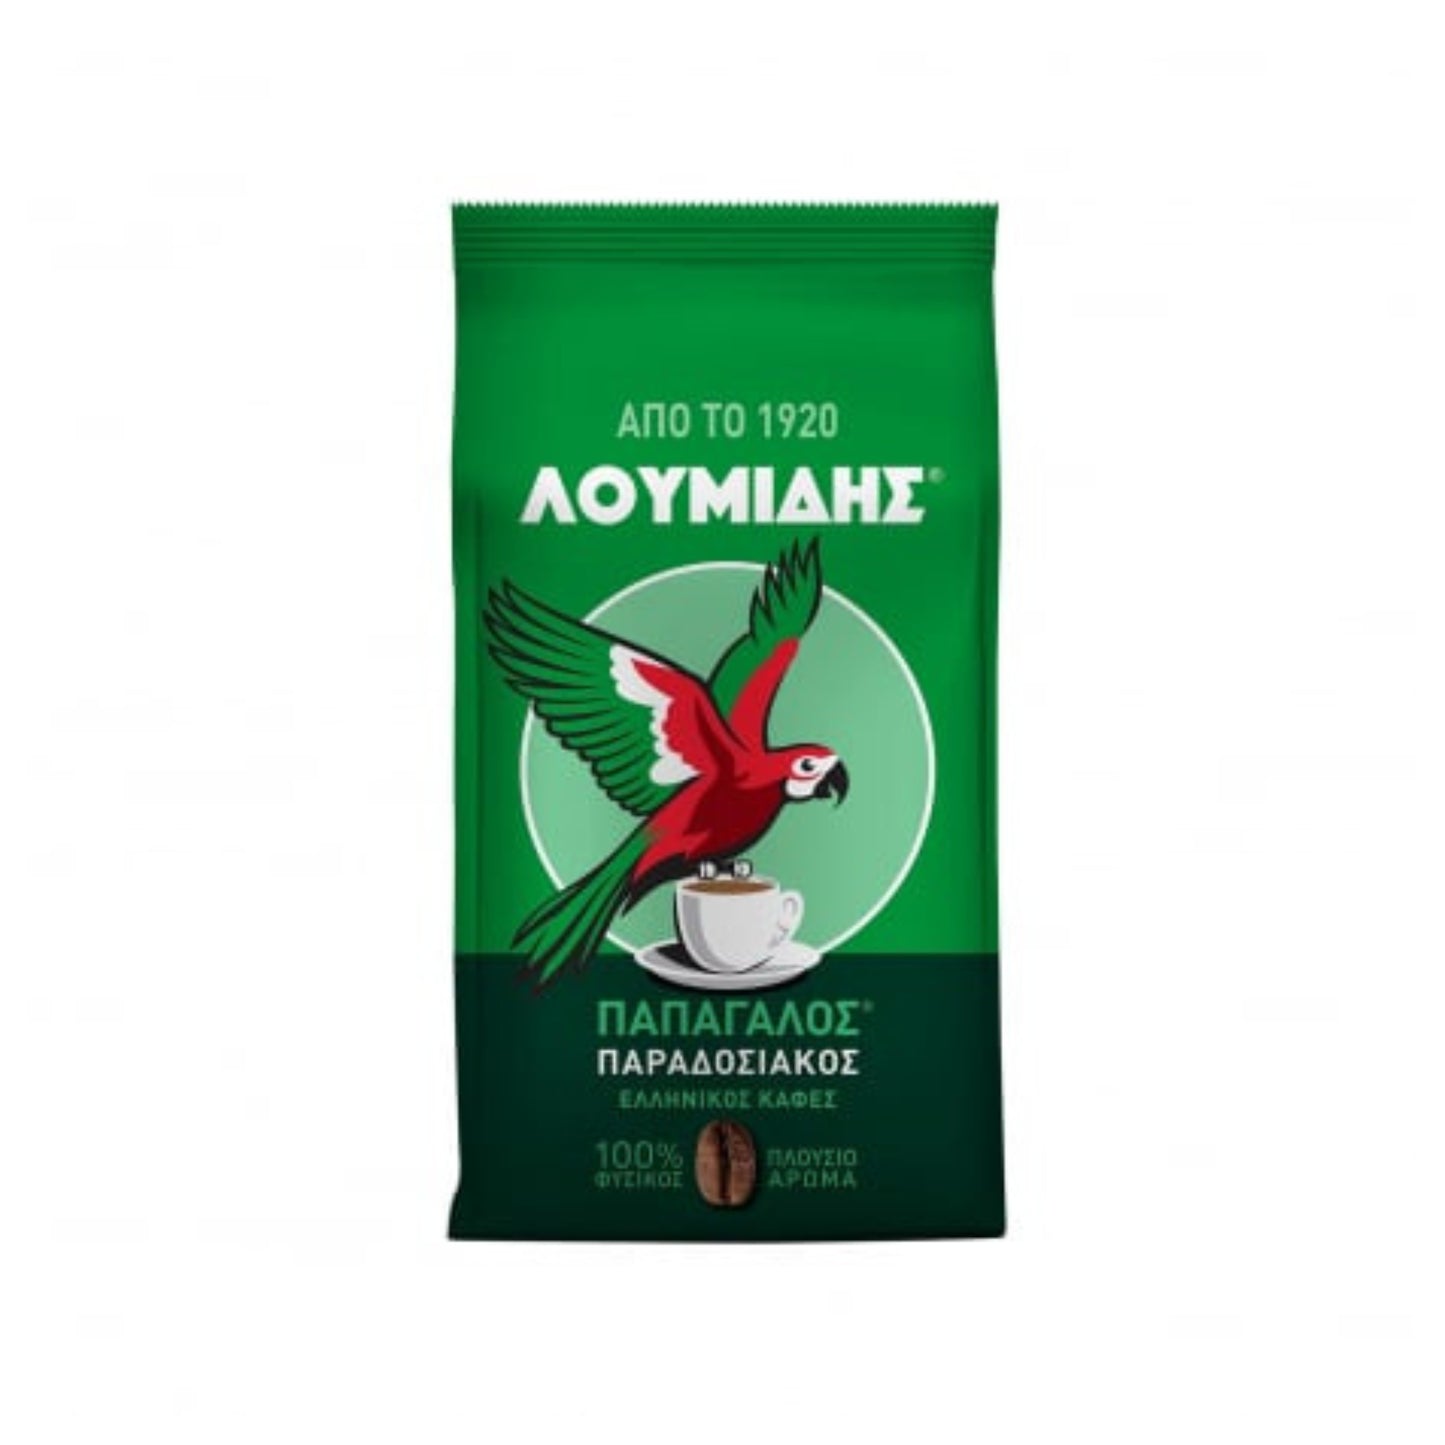 Griechischer Kaffee Loumidis - 96g